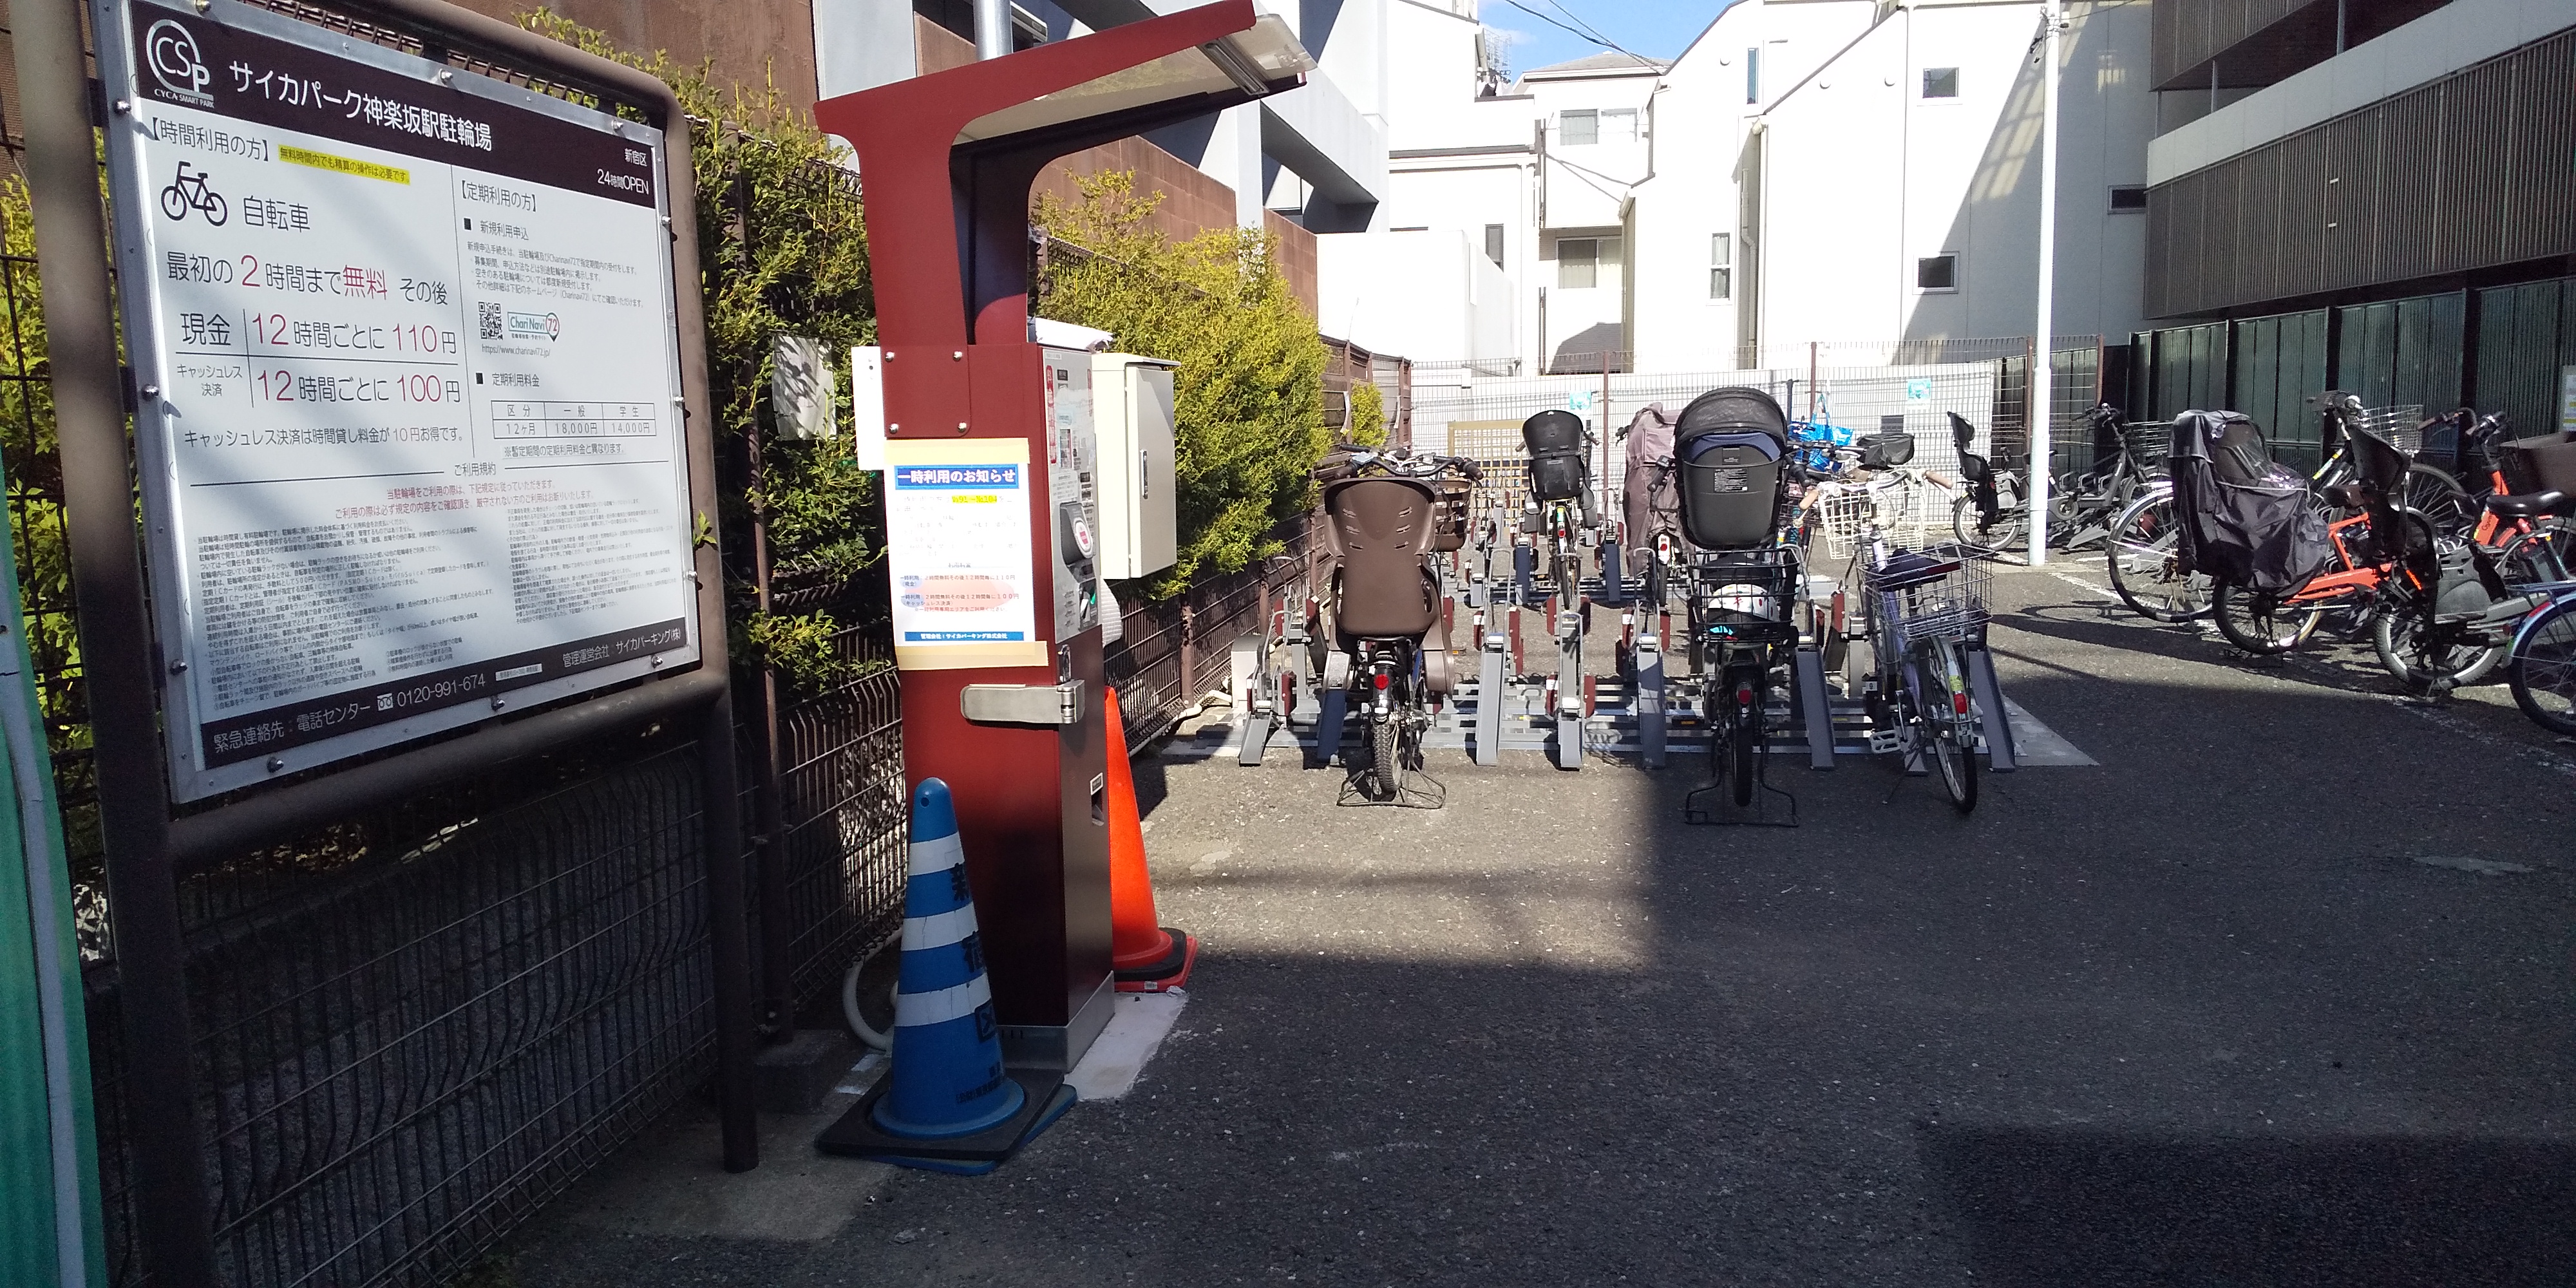 サイカパーク 神楽坂駅駐輪場の画像